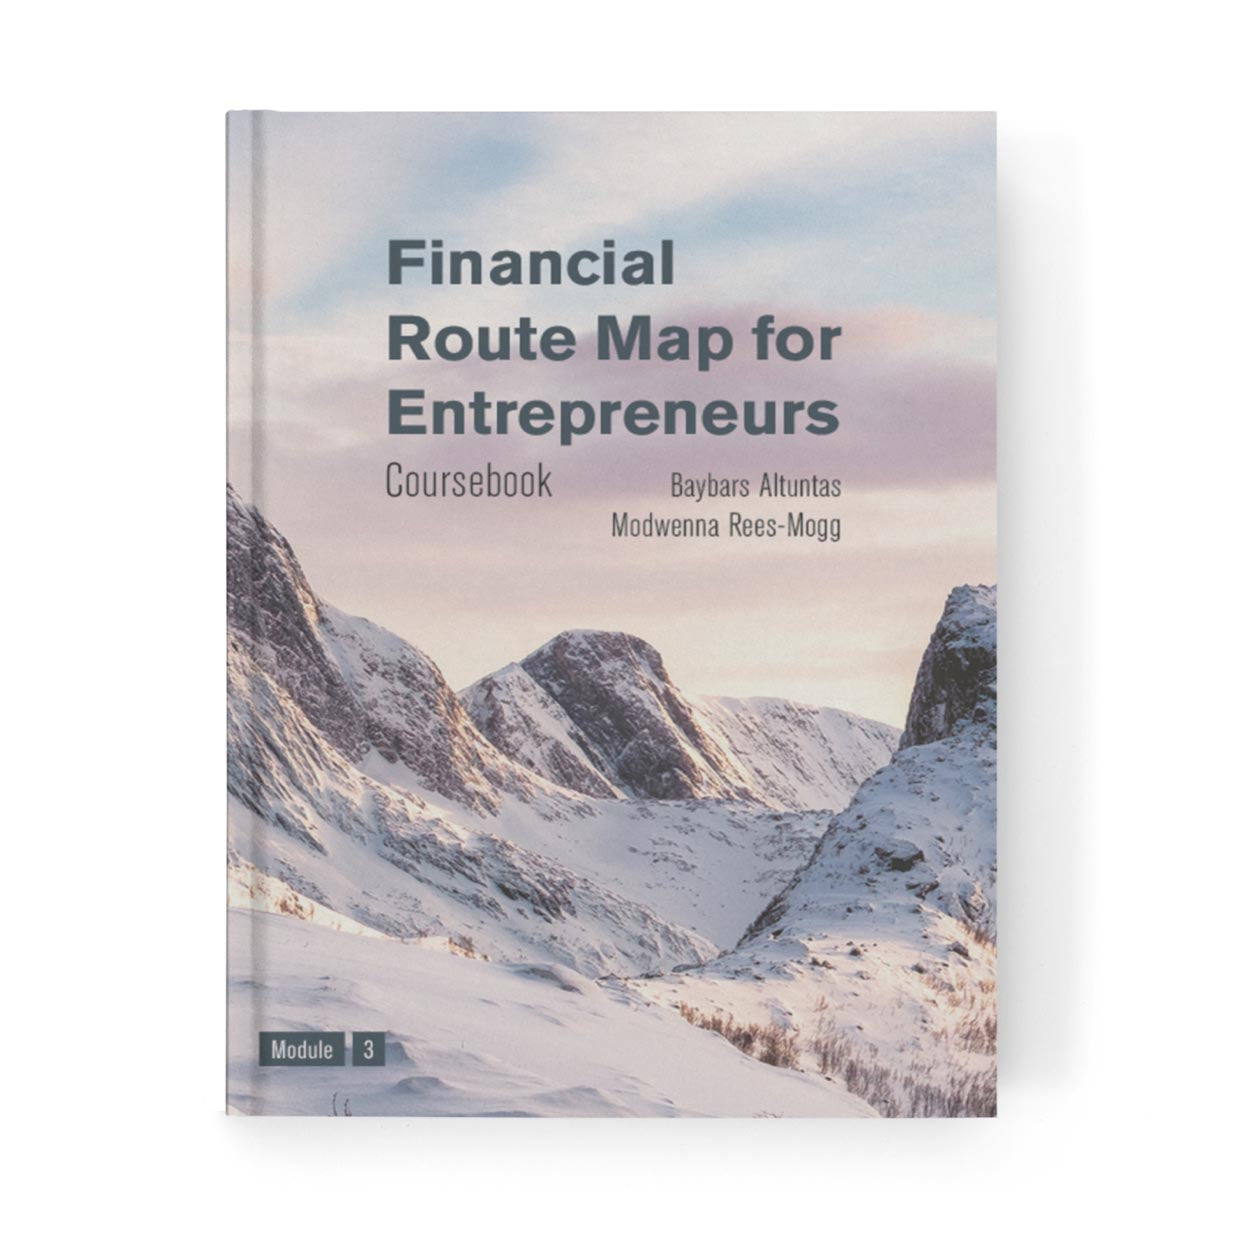 Financial Route Map for Entrepreneurs Coursebook